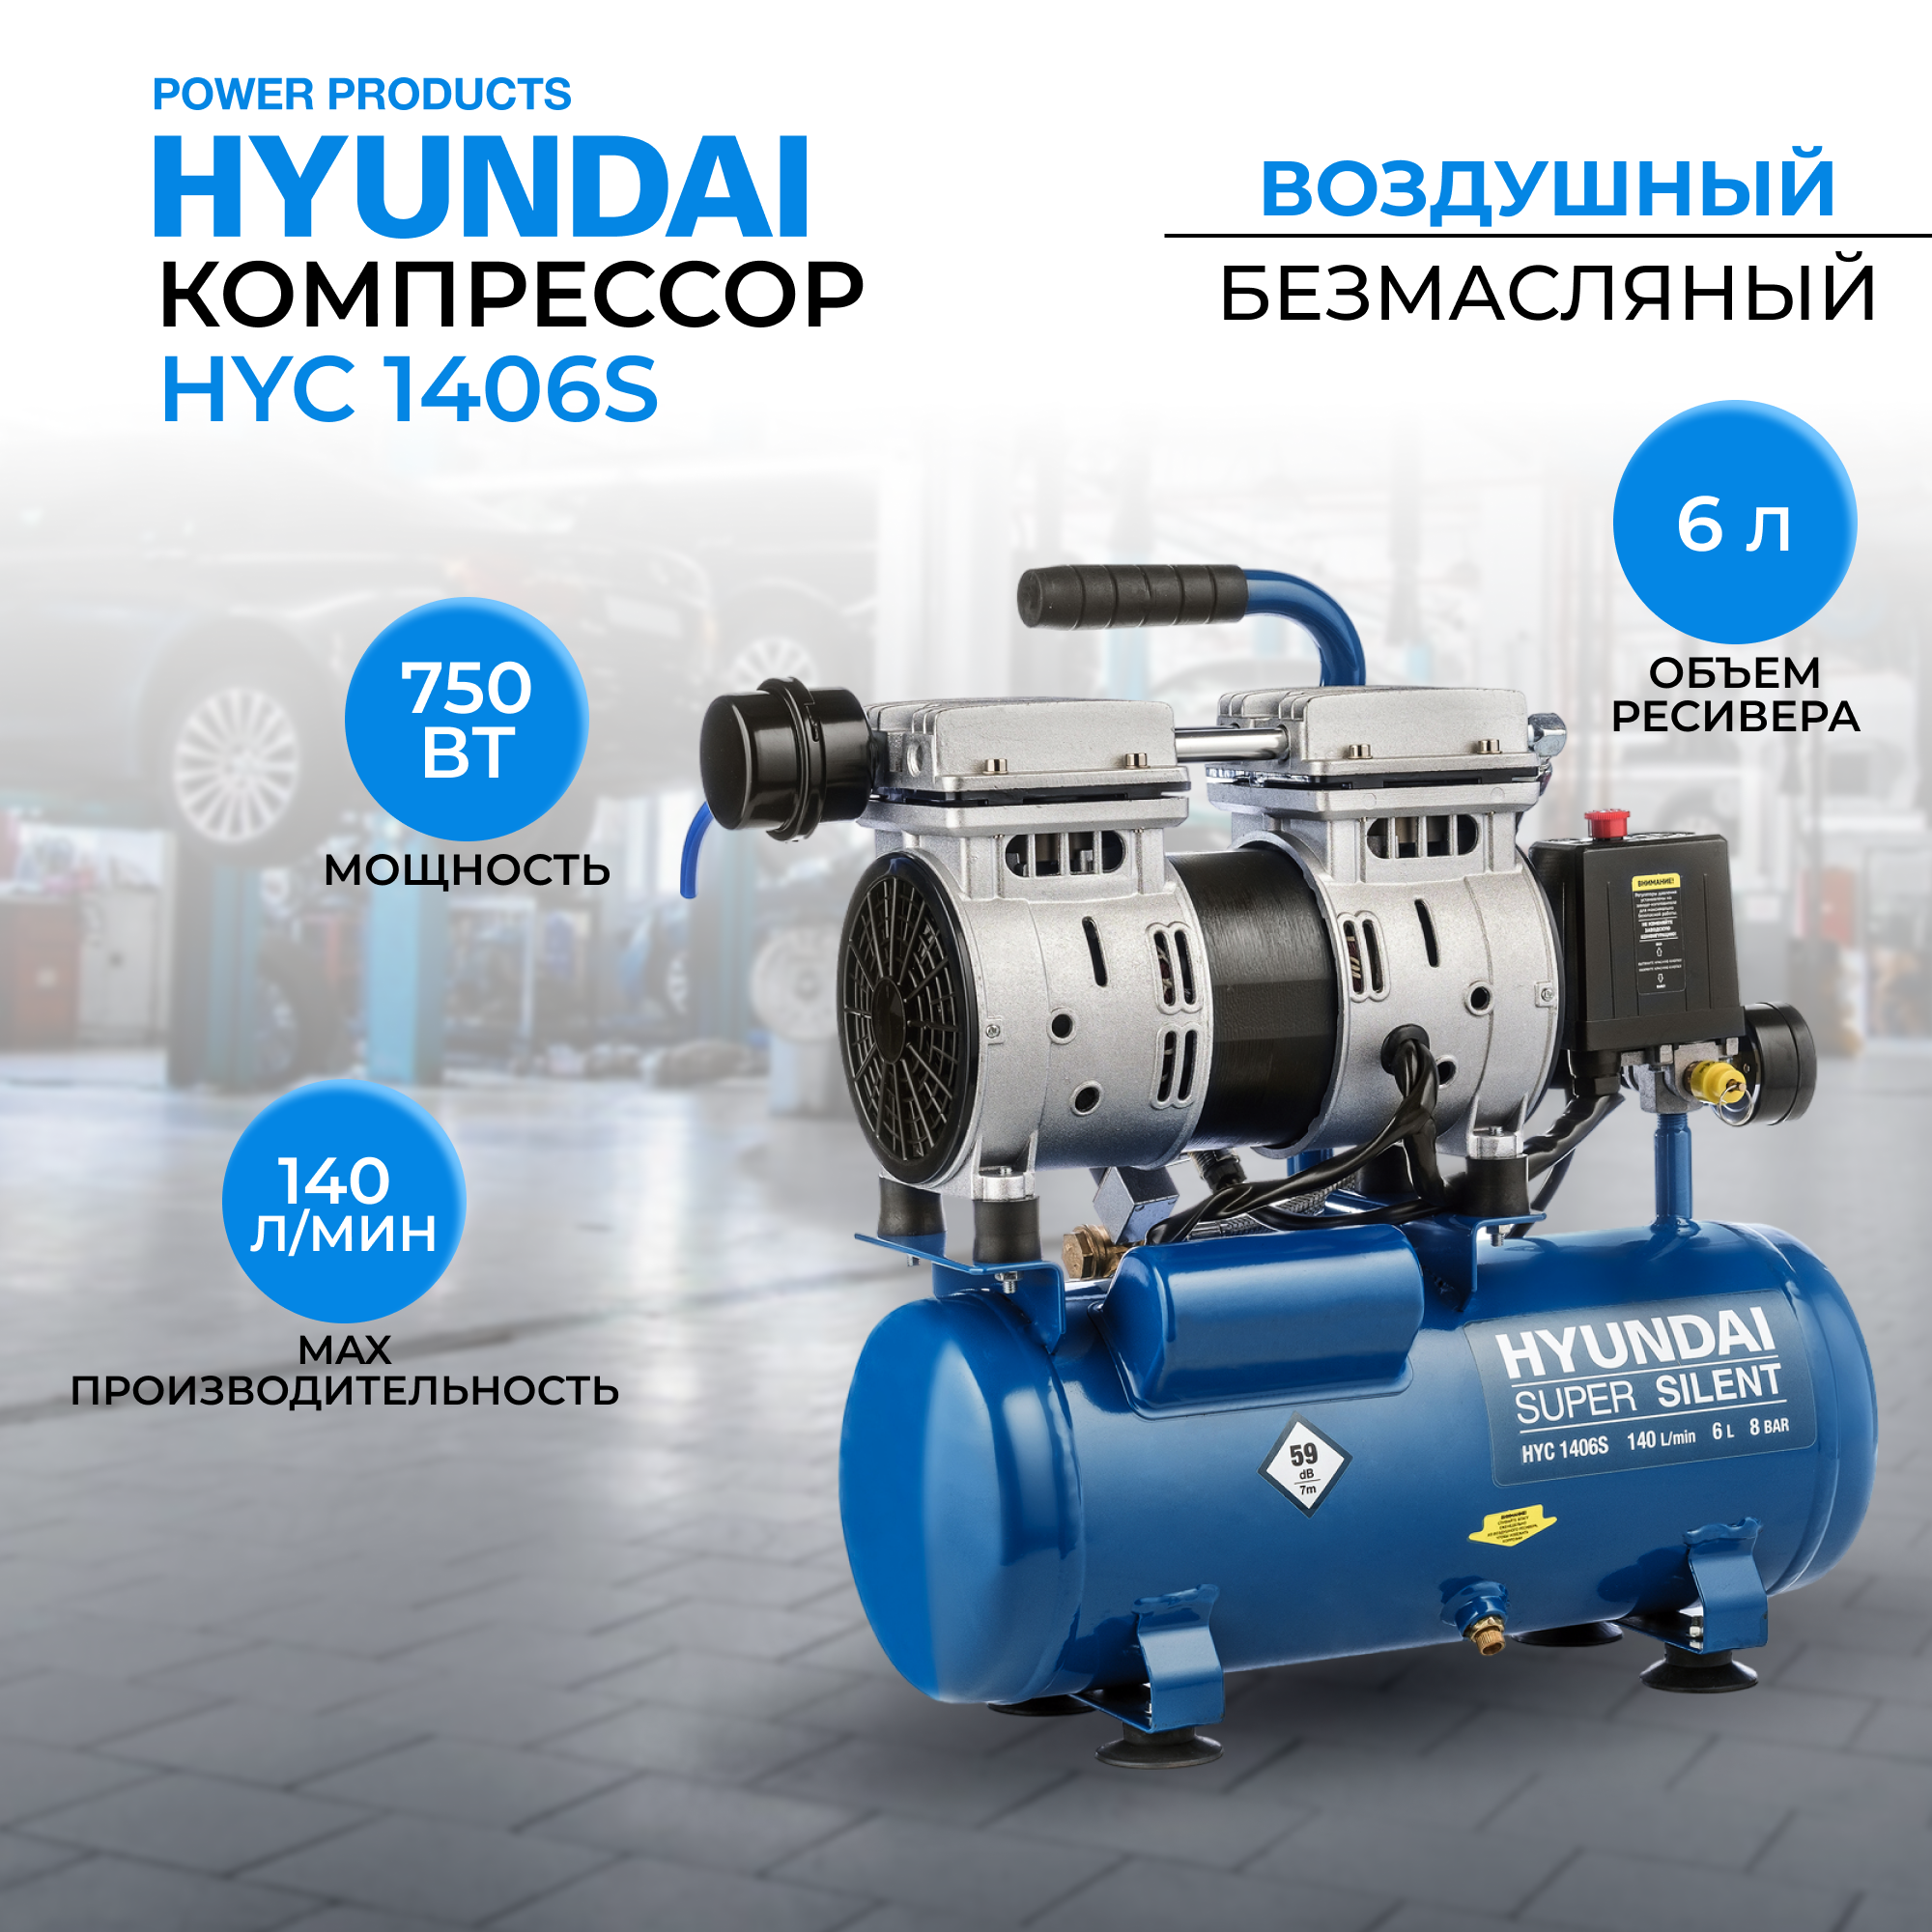 Воздушный поршневой компрессор Hyundai HYC 1406S безмасляный (140 л/мин, 750Вт, 8 бар) блок автоматики hyundai ats 10 220v для dhy 12000le se